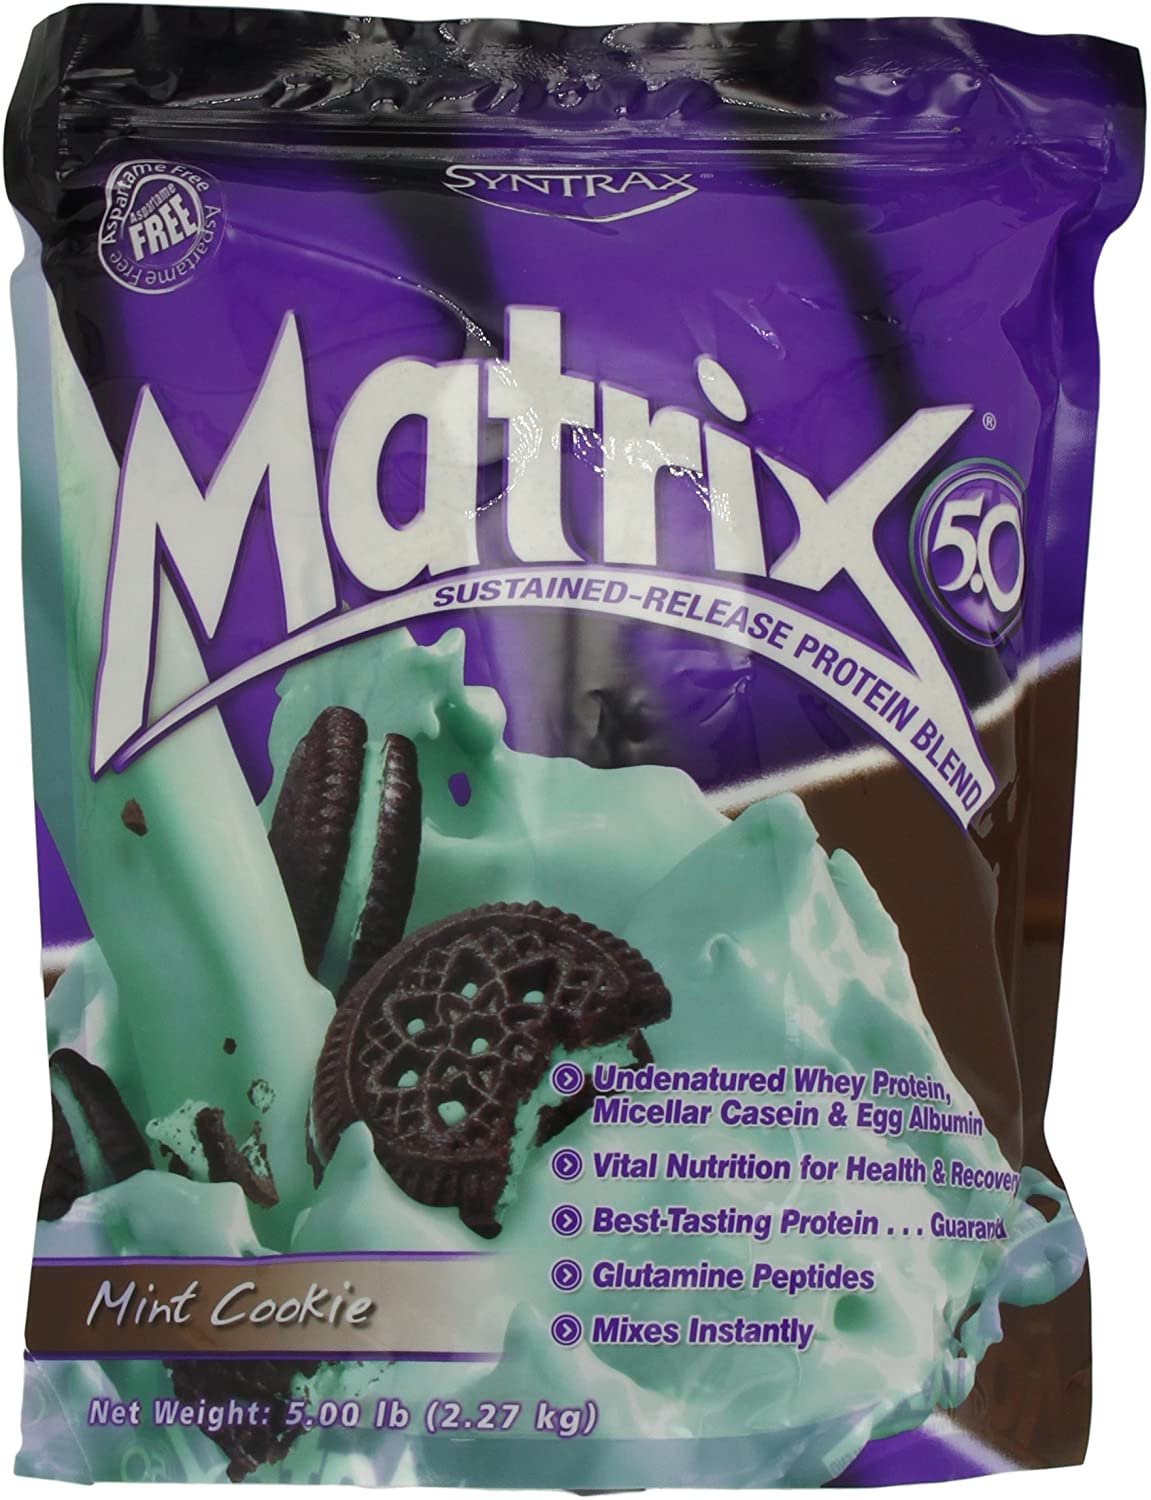 Syntrax Matrix 5, Mint Cookie Powder, 5lbs